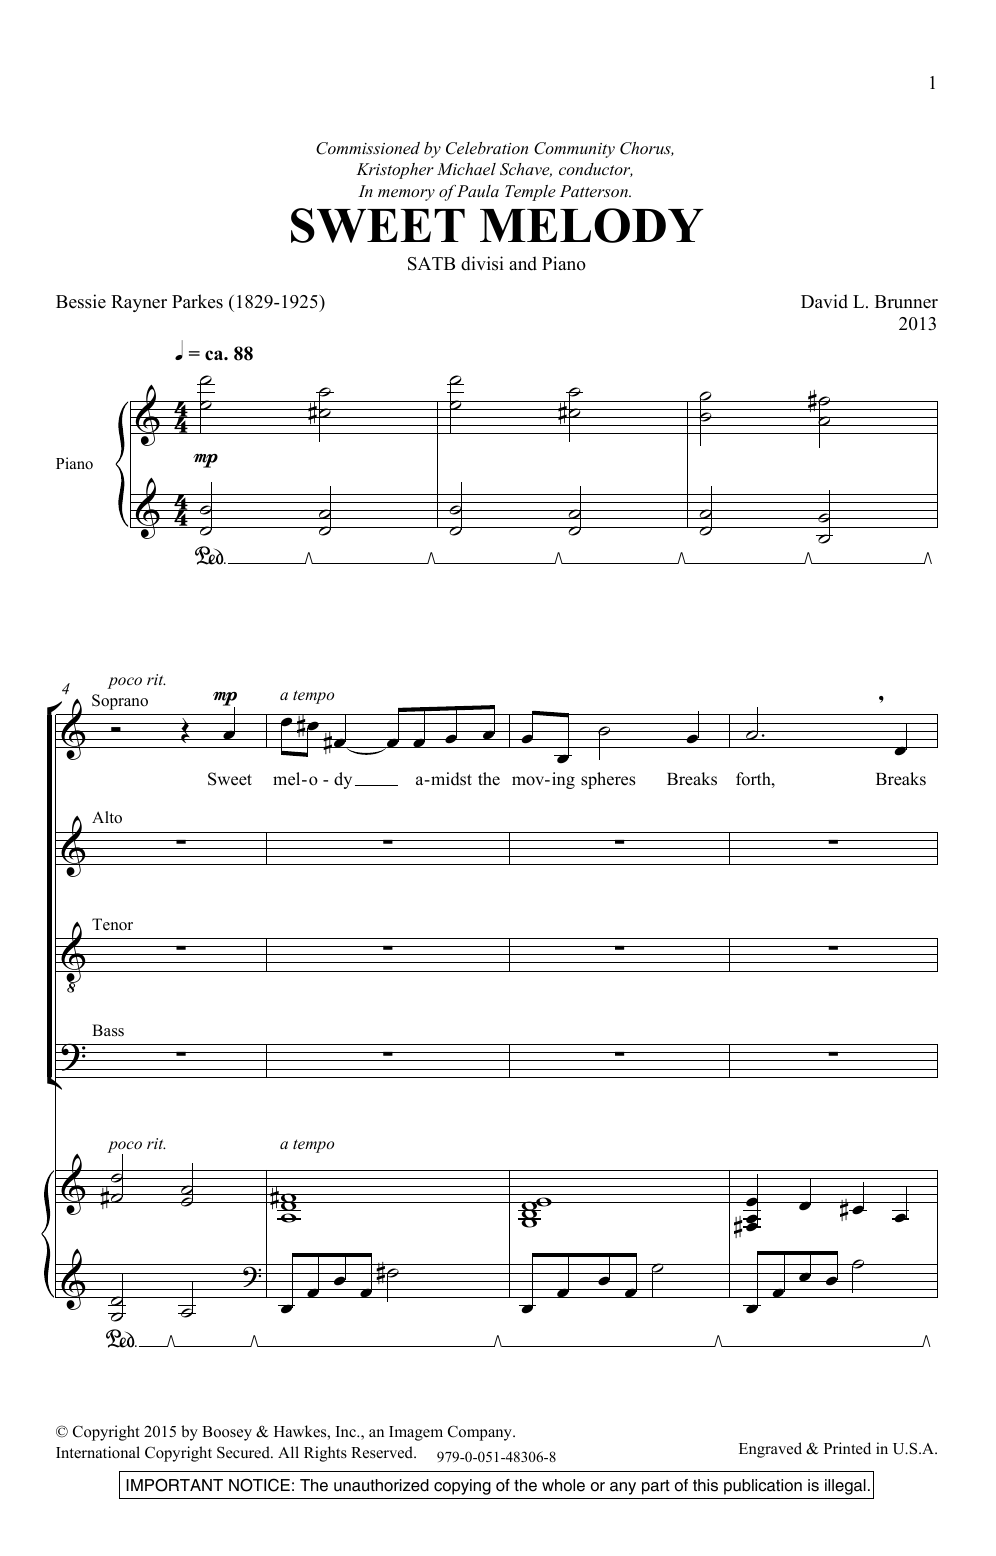 Download David Brunner Sweet Melody Sheet Music